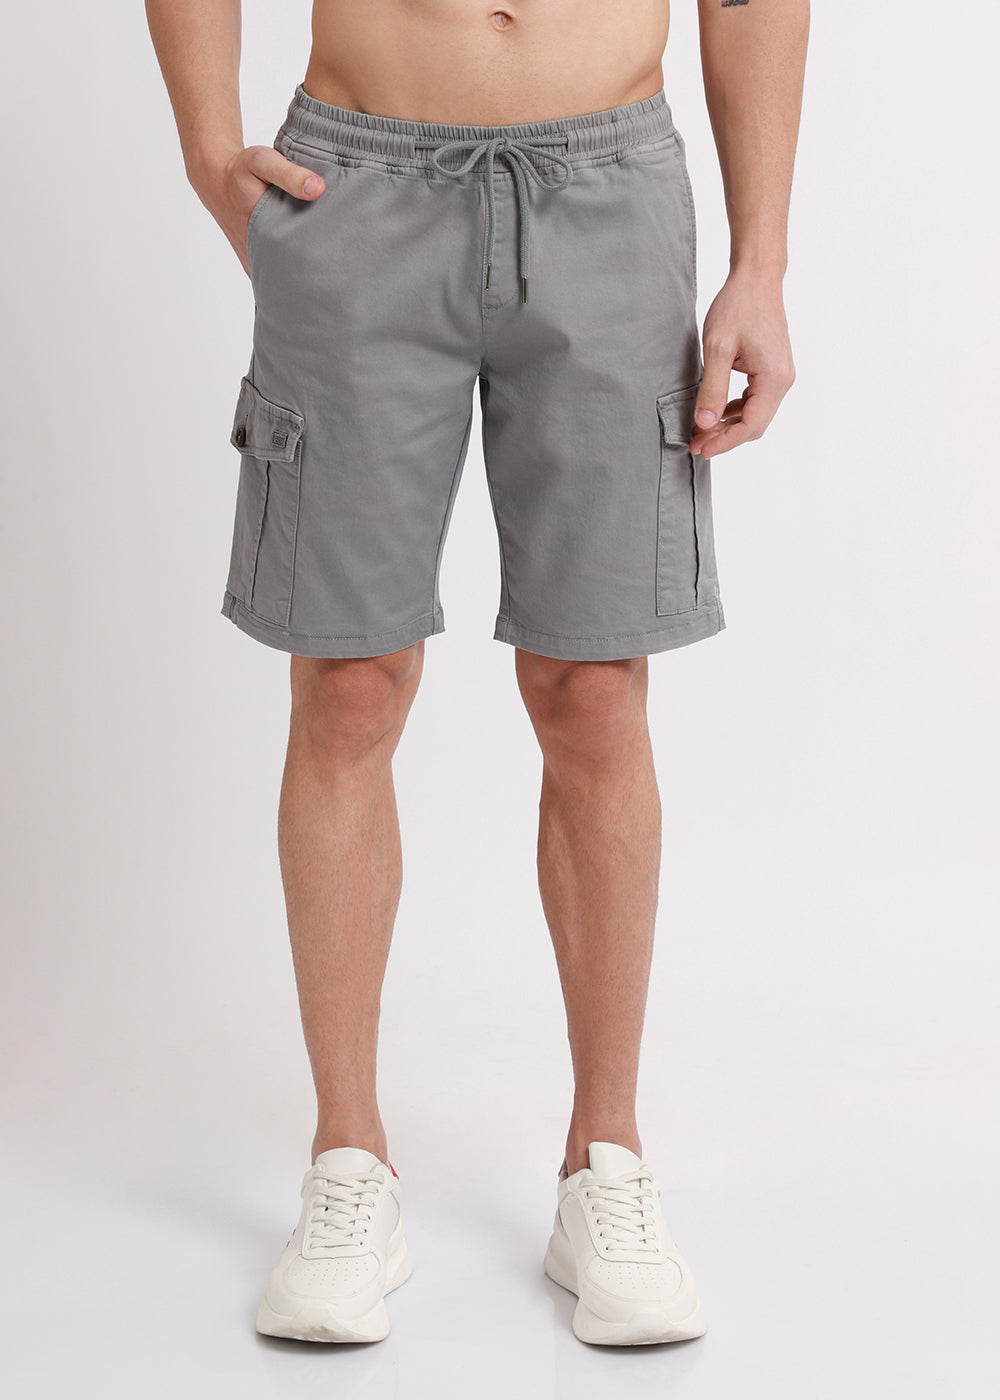 Brocky Grey Cotton Cargo Shorts2